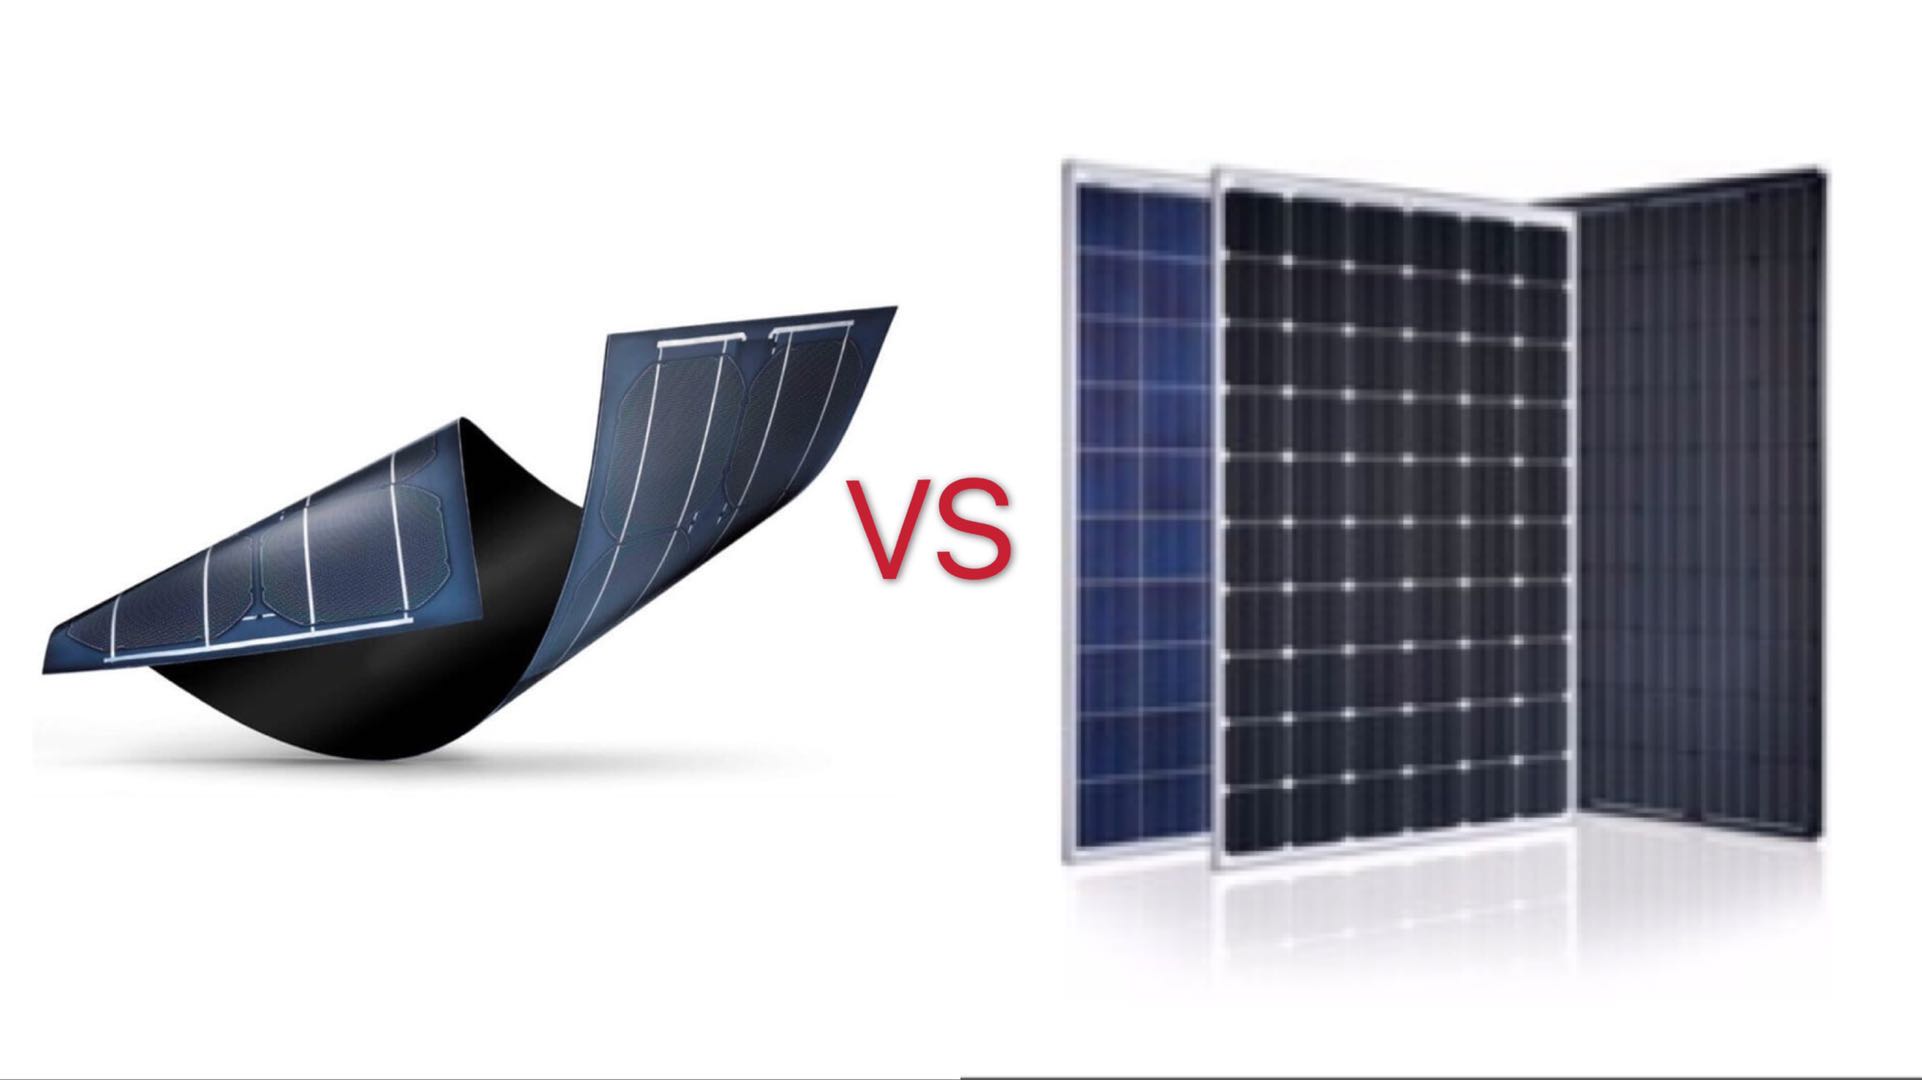 الألواح الشمسية ذات الأغشية الرقيقة مقابل الألواح الشمسية السليكونية البلورية